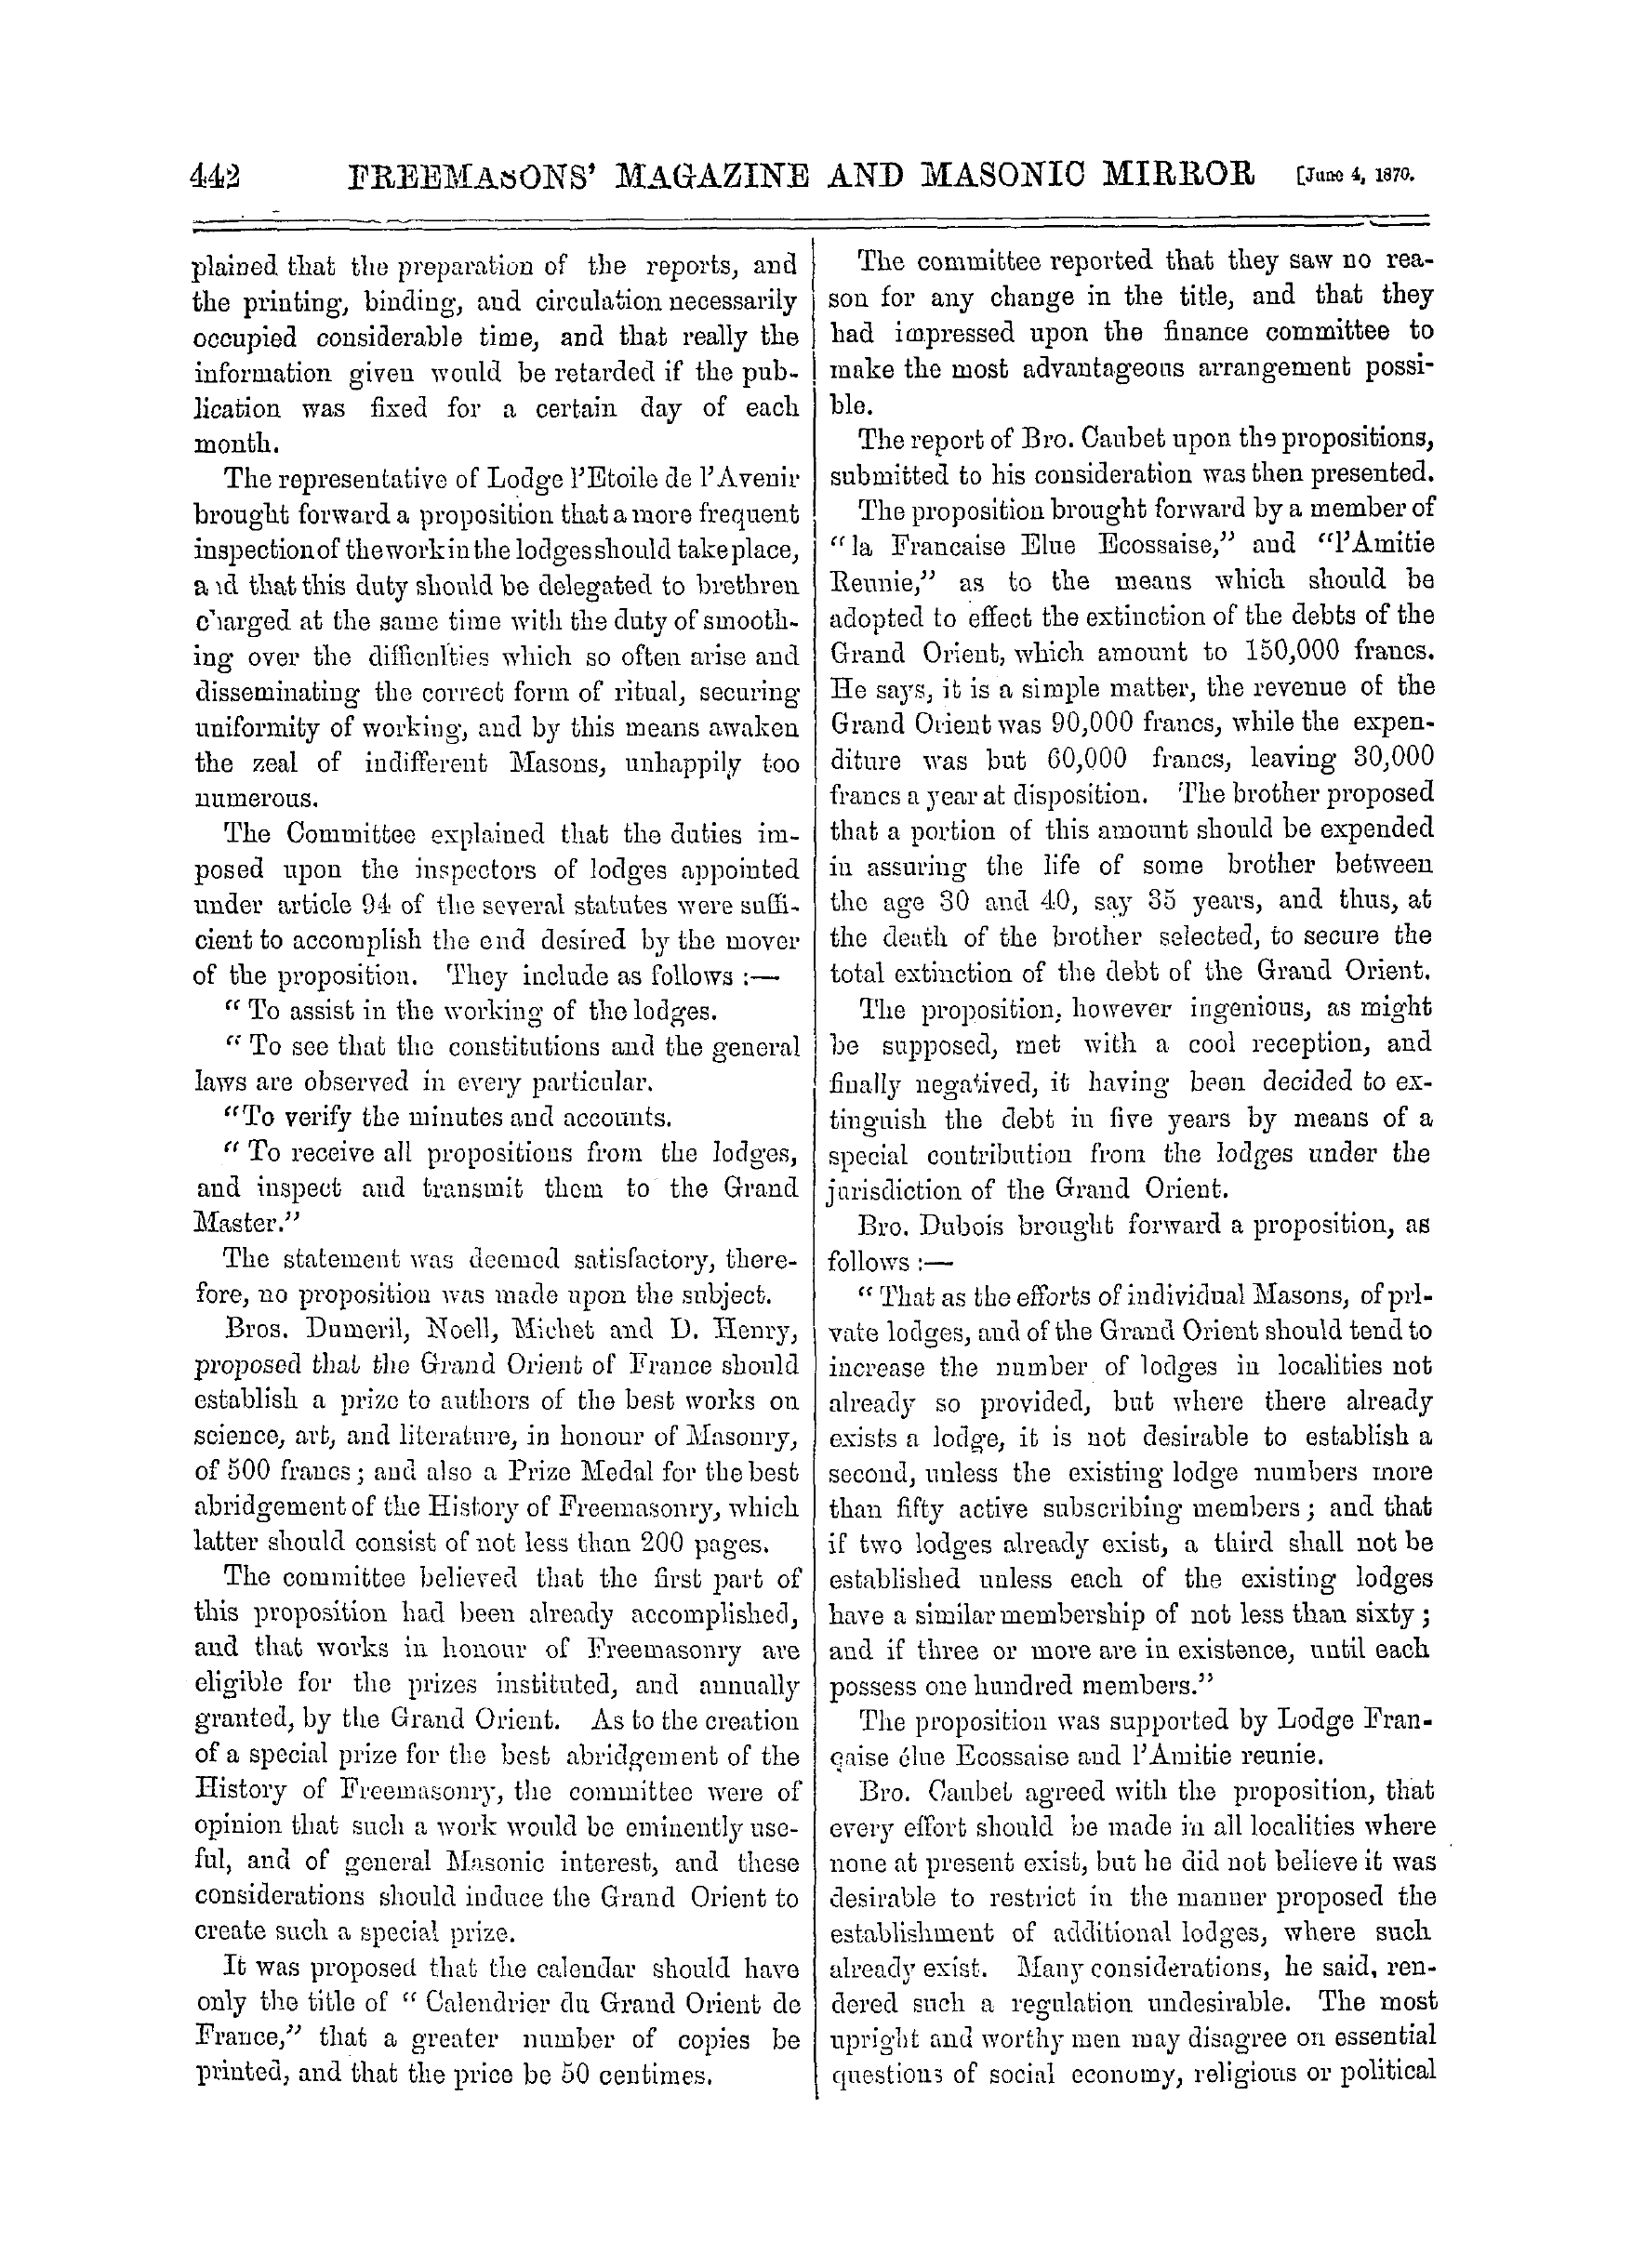 The Freemasons' Monthly Magazine: 1870-06-04 - Freemasonry In France.